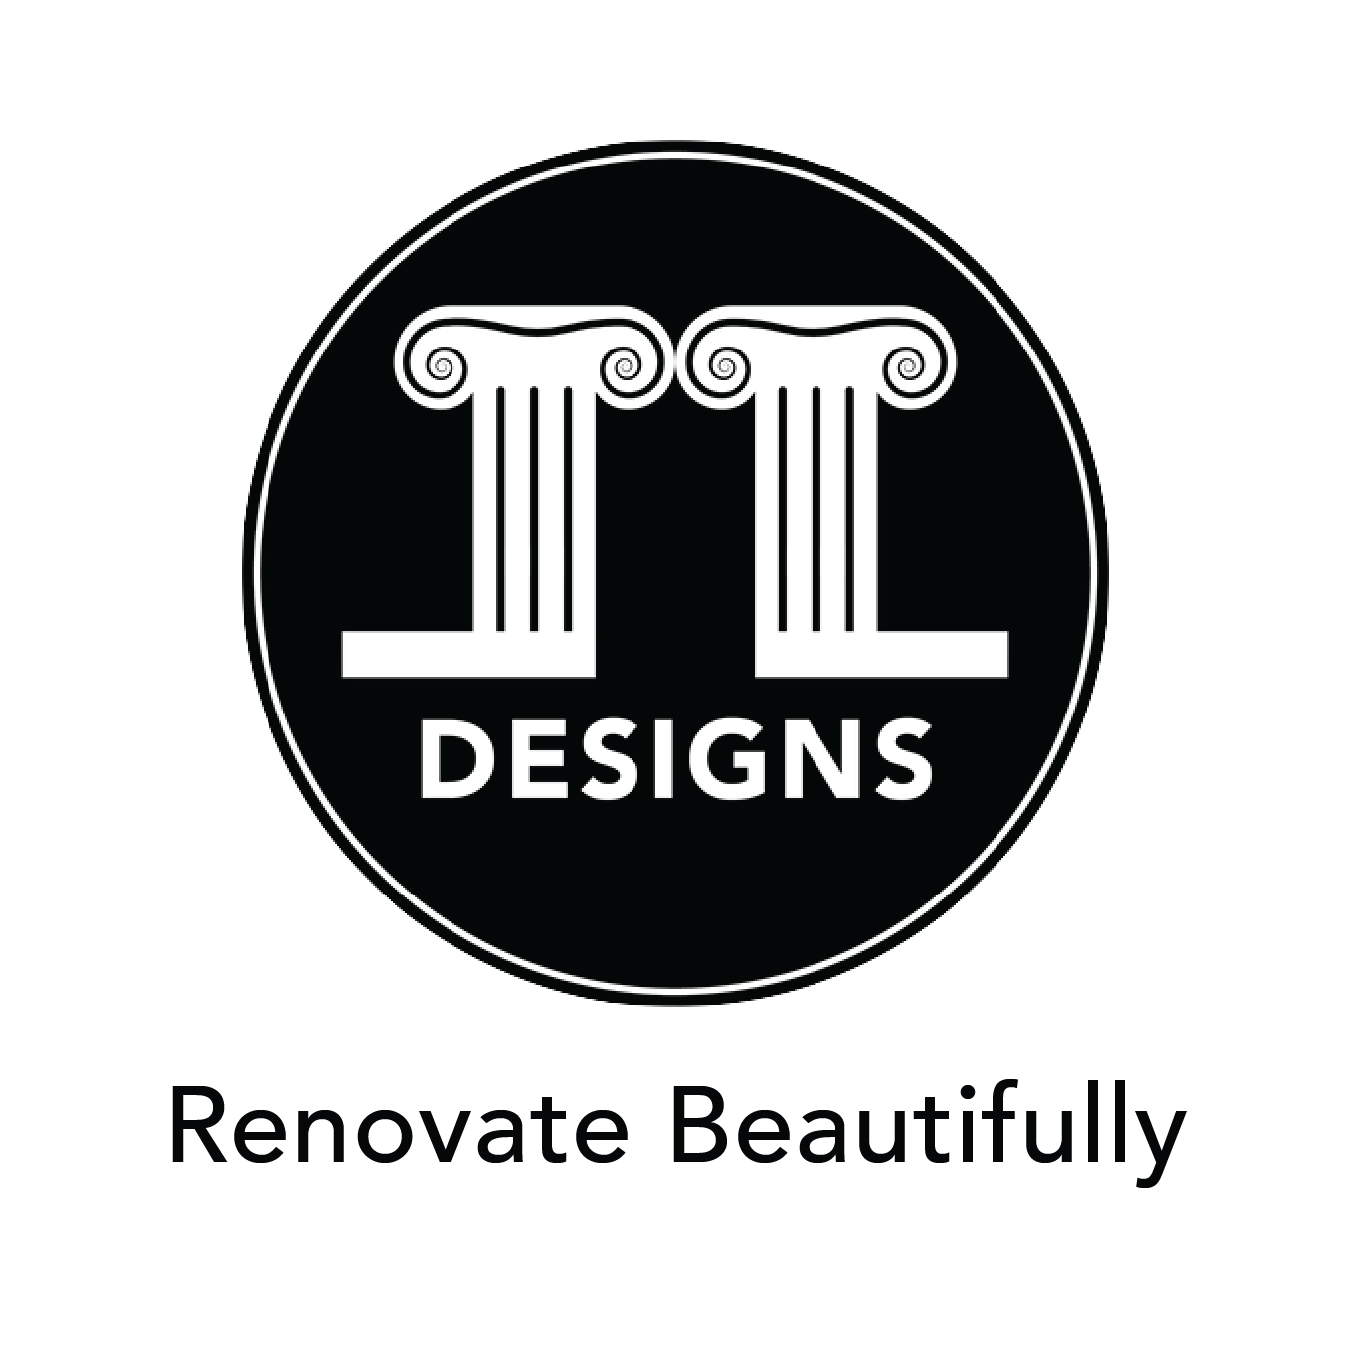 Design Logo with Tagline_v4_4.3.22.png